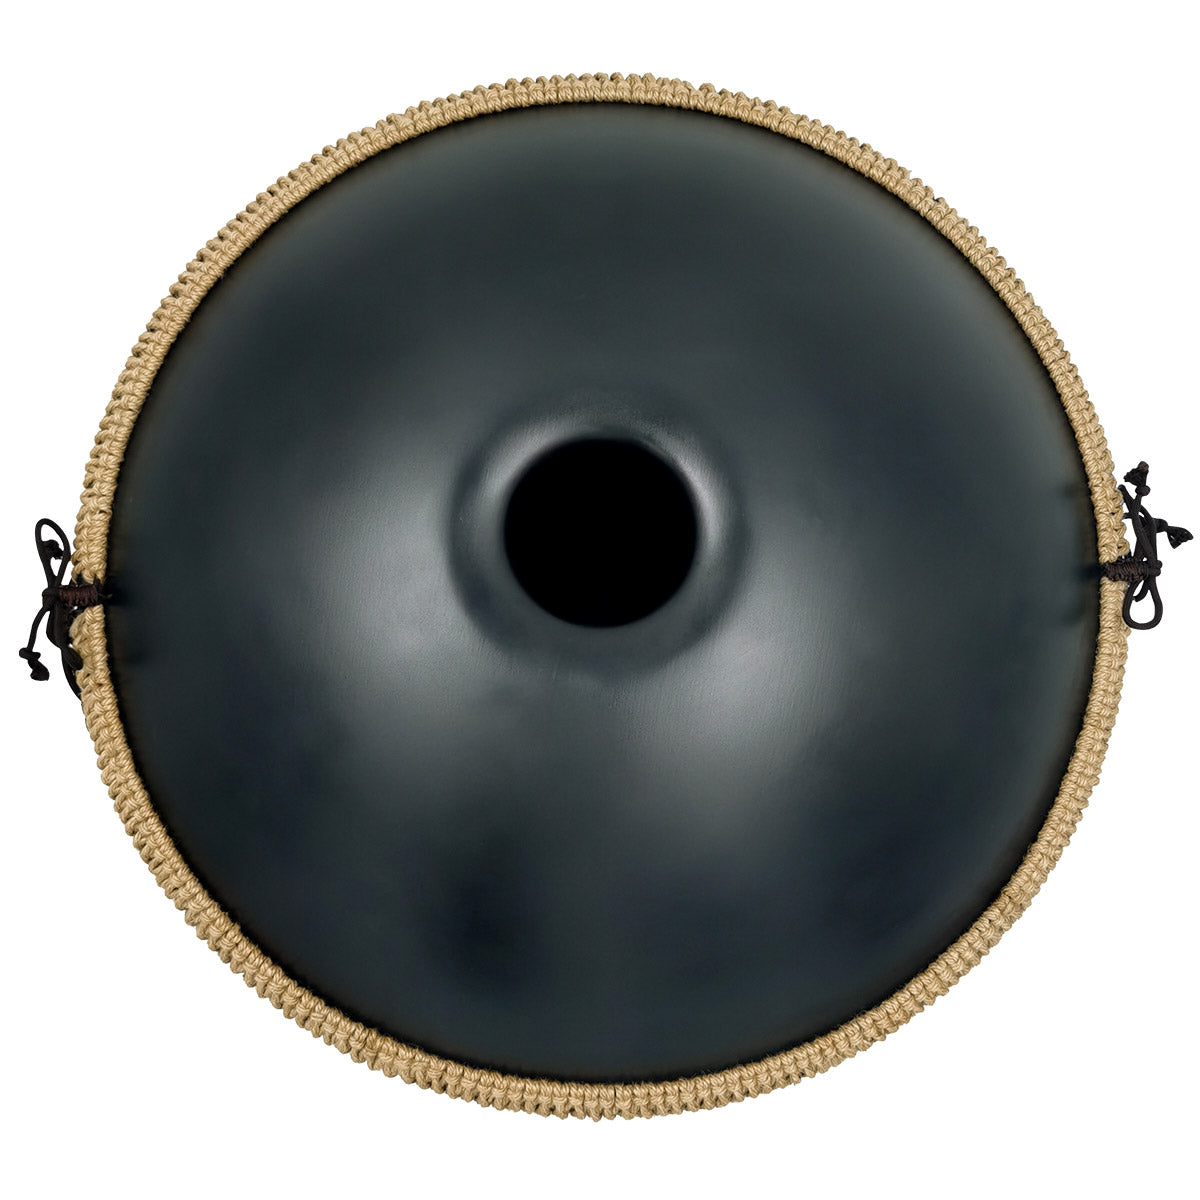 MiSoundofNature DC Handpan Drum Pure Black 22 Inches 10 Notes D Minor Kurd Scale Hangdrum